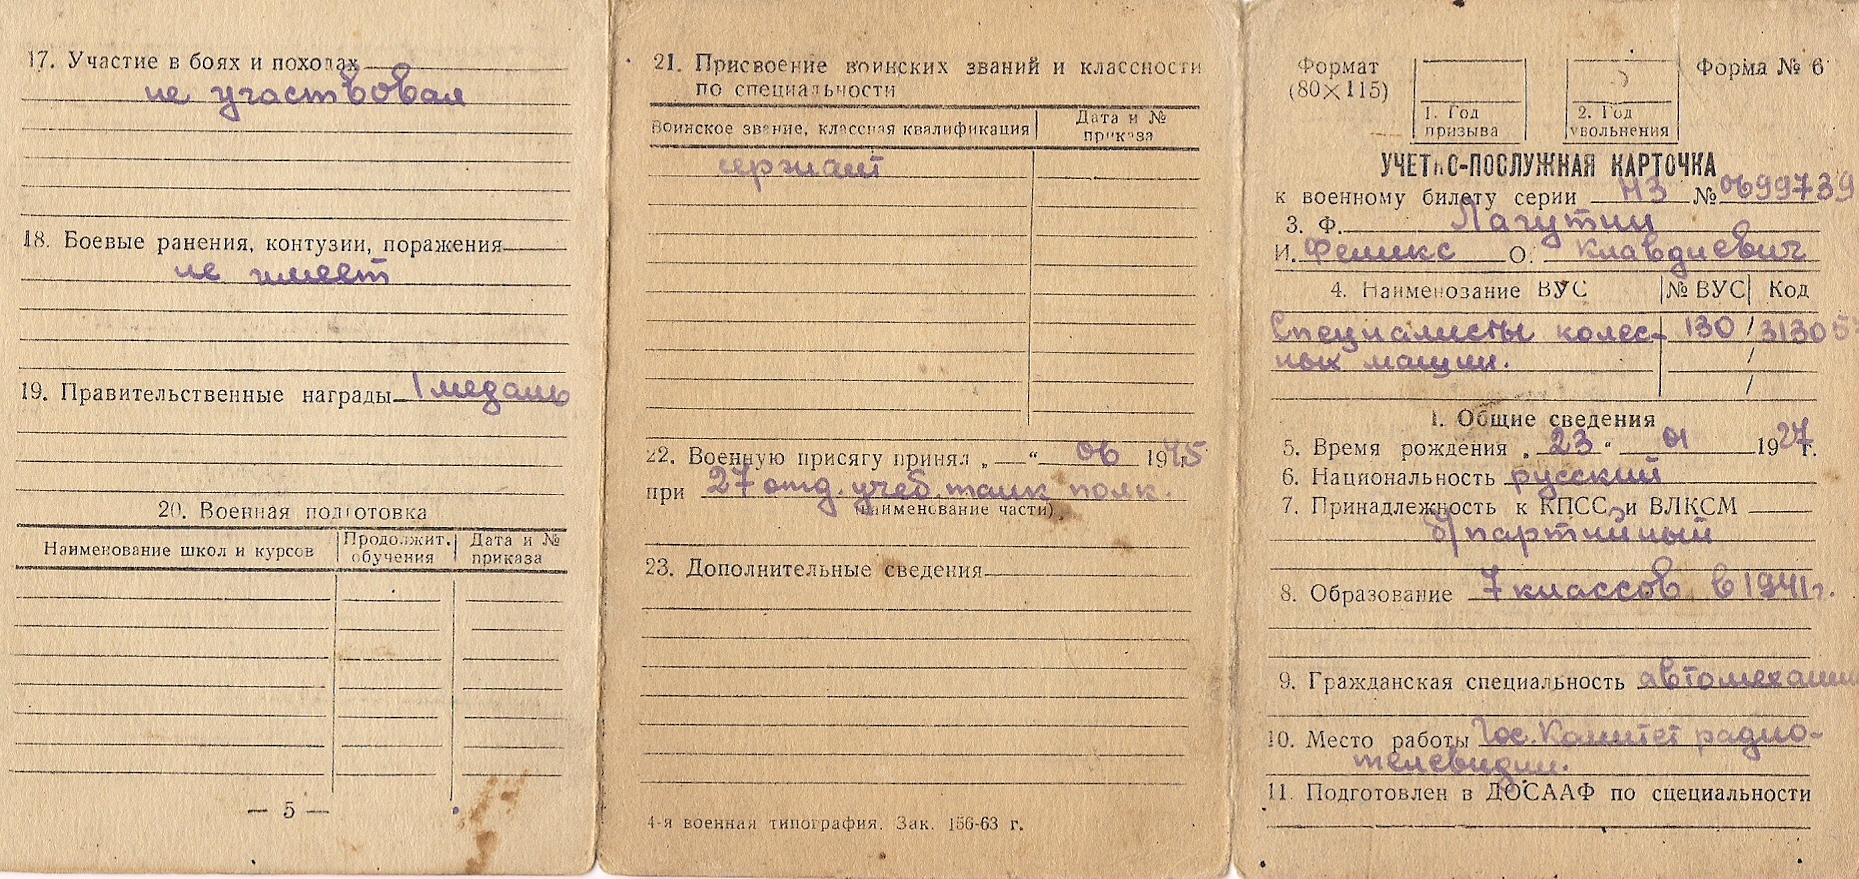 Учётная карточка военнослужащего Советской армии